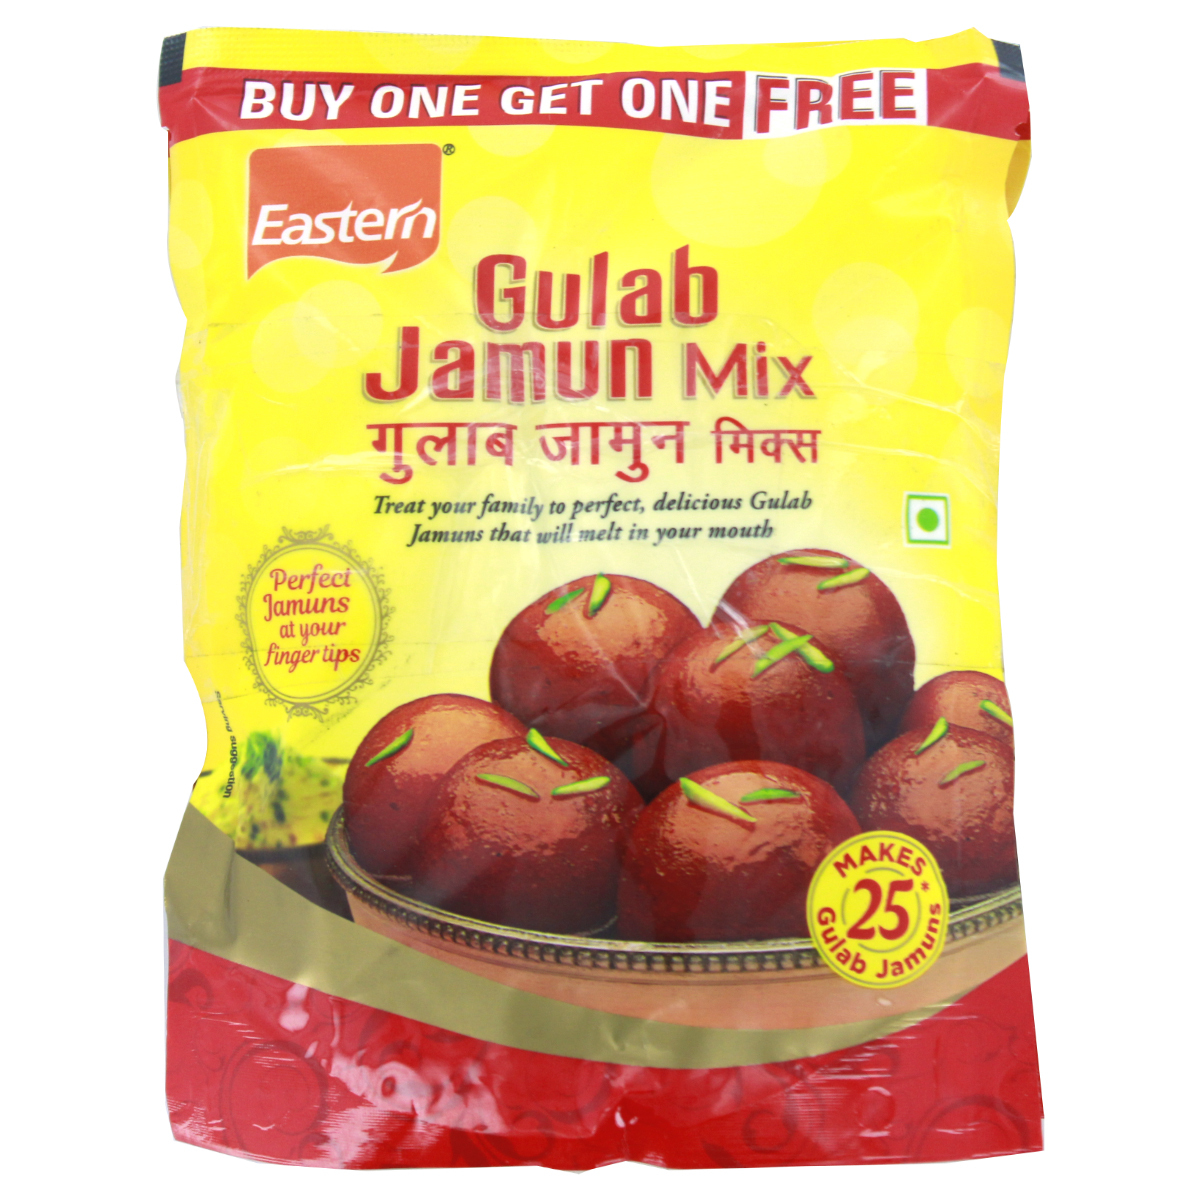 Eastern Gulab Jamun Mix 200g